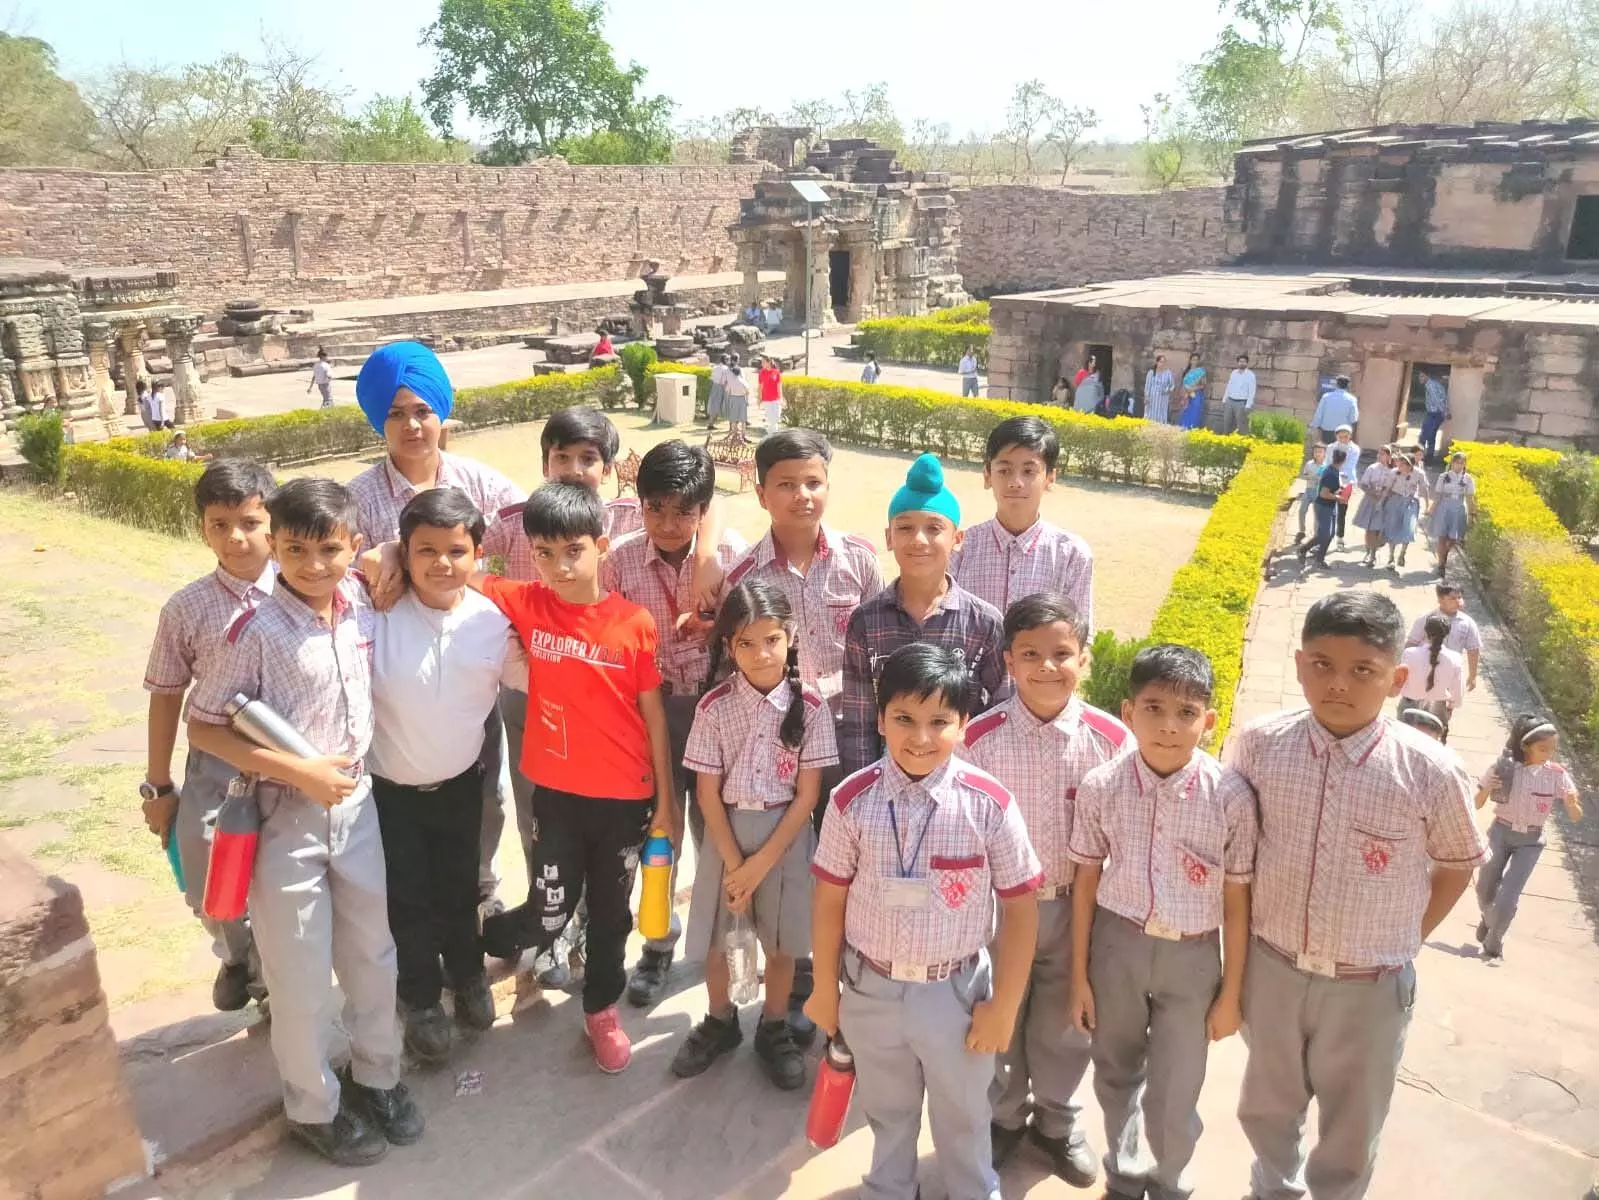 विश्वे धरोहर दिवस पर स्कूली बच्चों ने जाना शिवपुरी की धरोहर सुरवाया गढ़ी का इतिहास